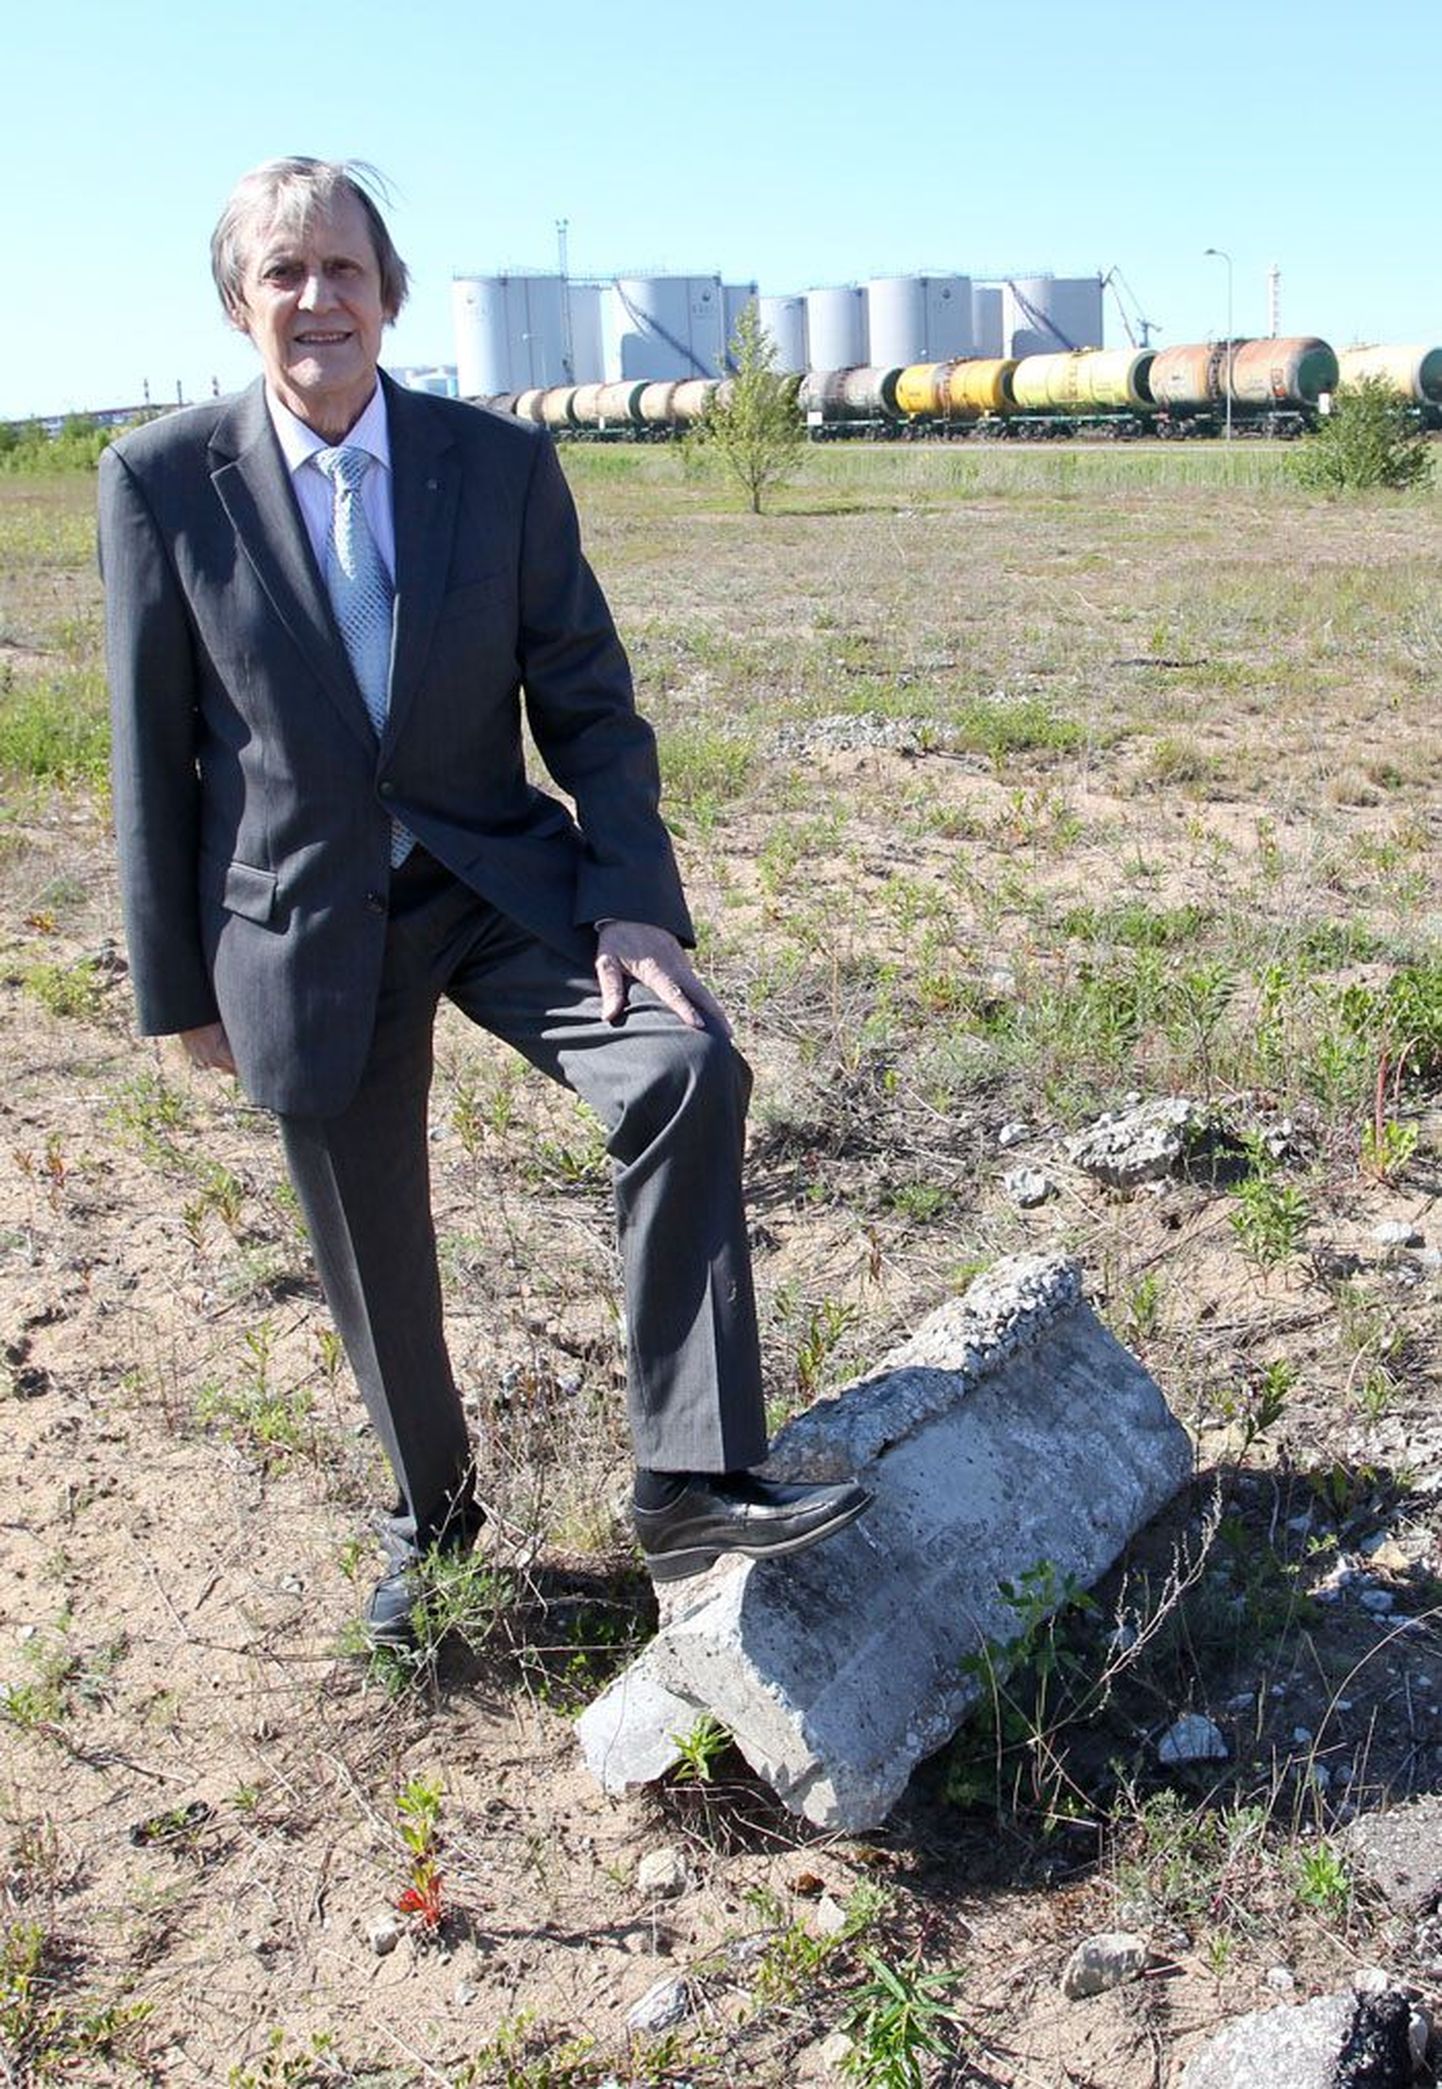 Ökoloogist akadeemik Jüri Martin, kes on ühtlasi Rohuneeme külavanem, seisab Muuga aedlinnas kohas, kuhu sadam soovib uusi ehitisi rajada.